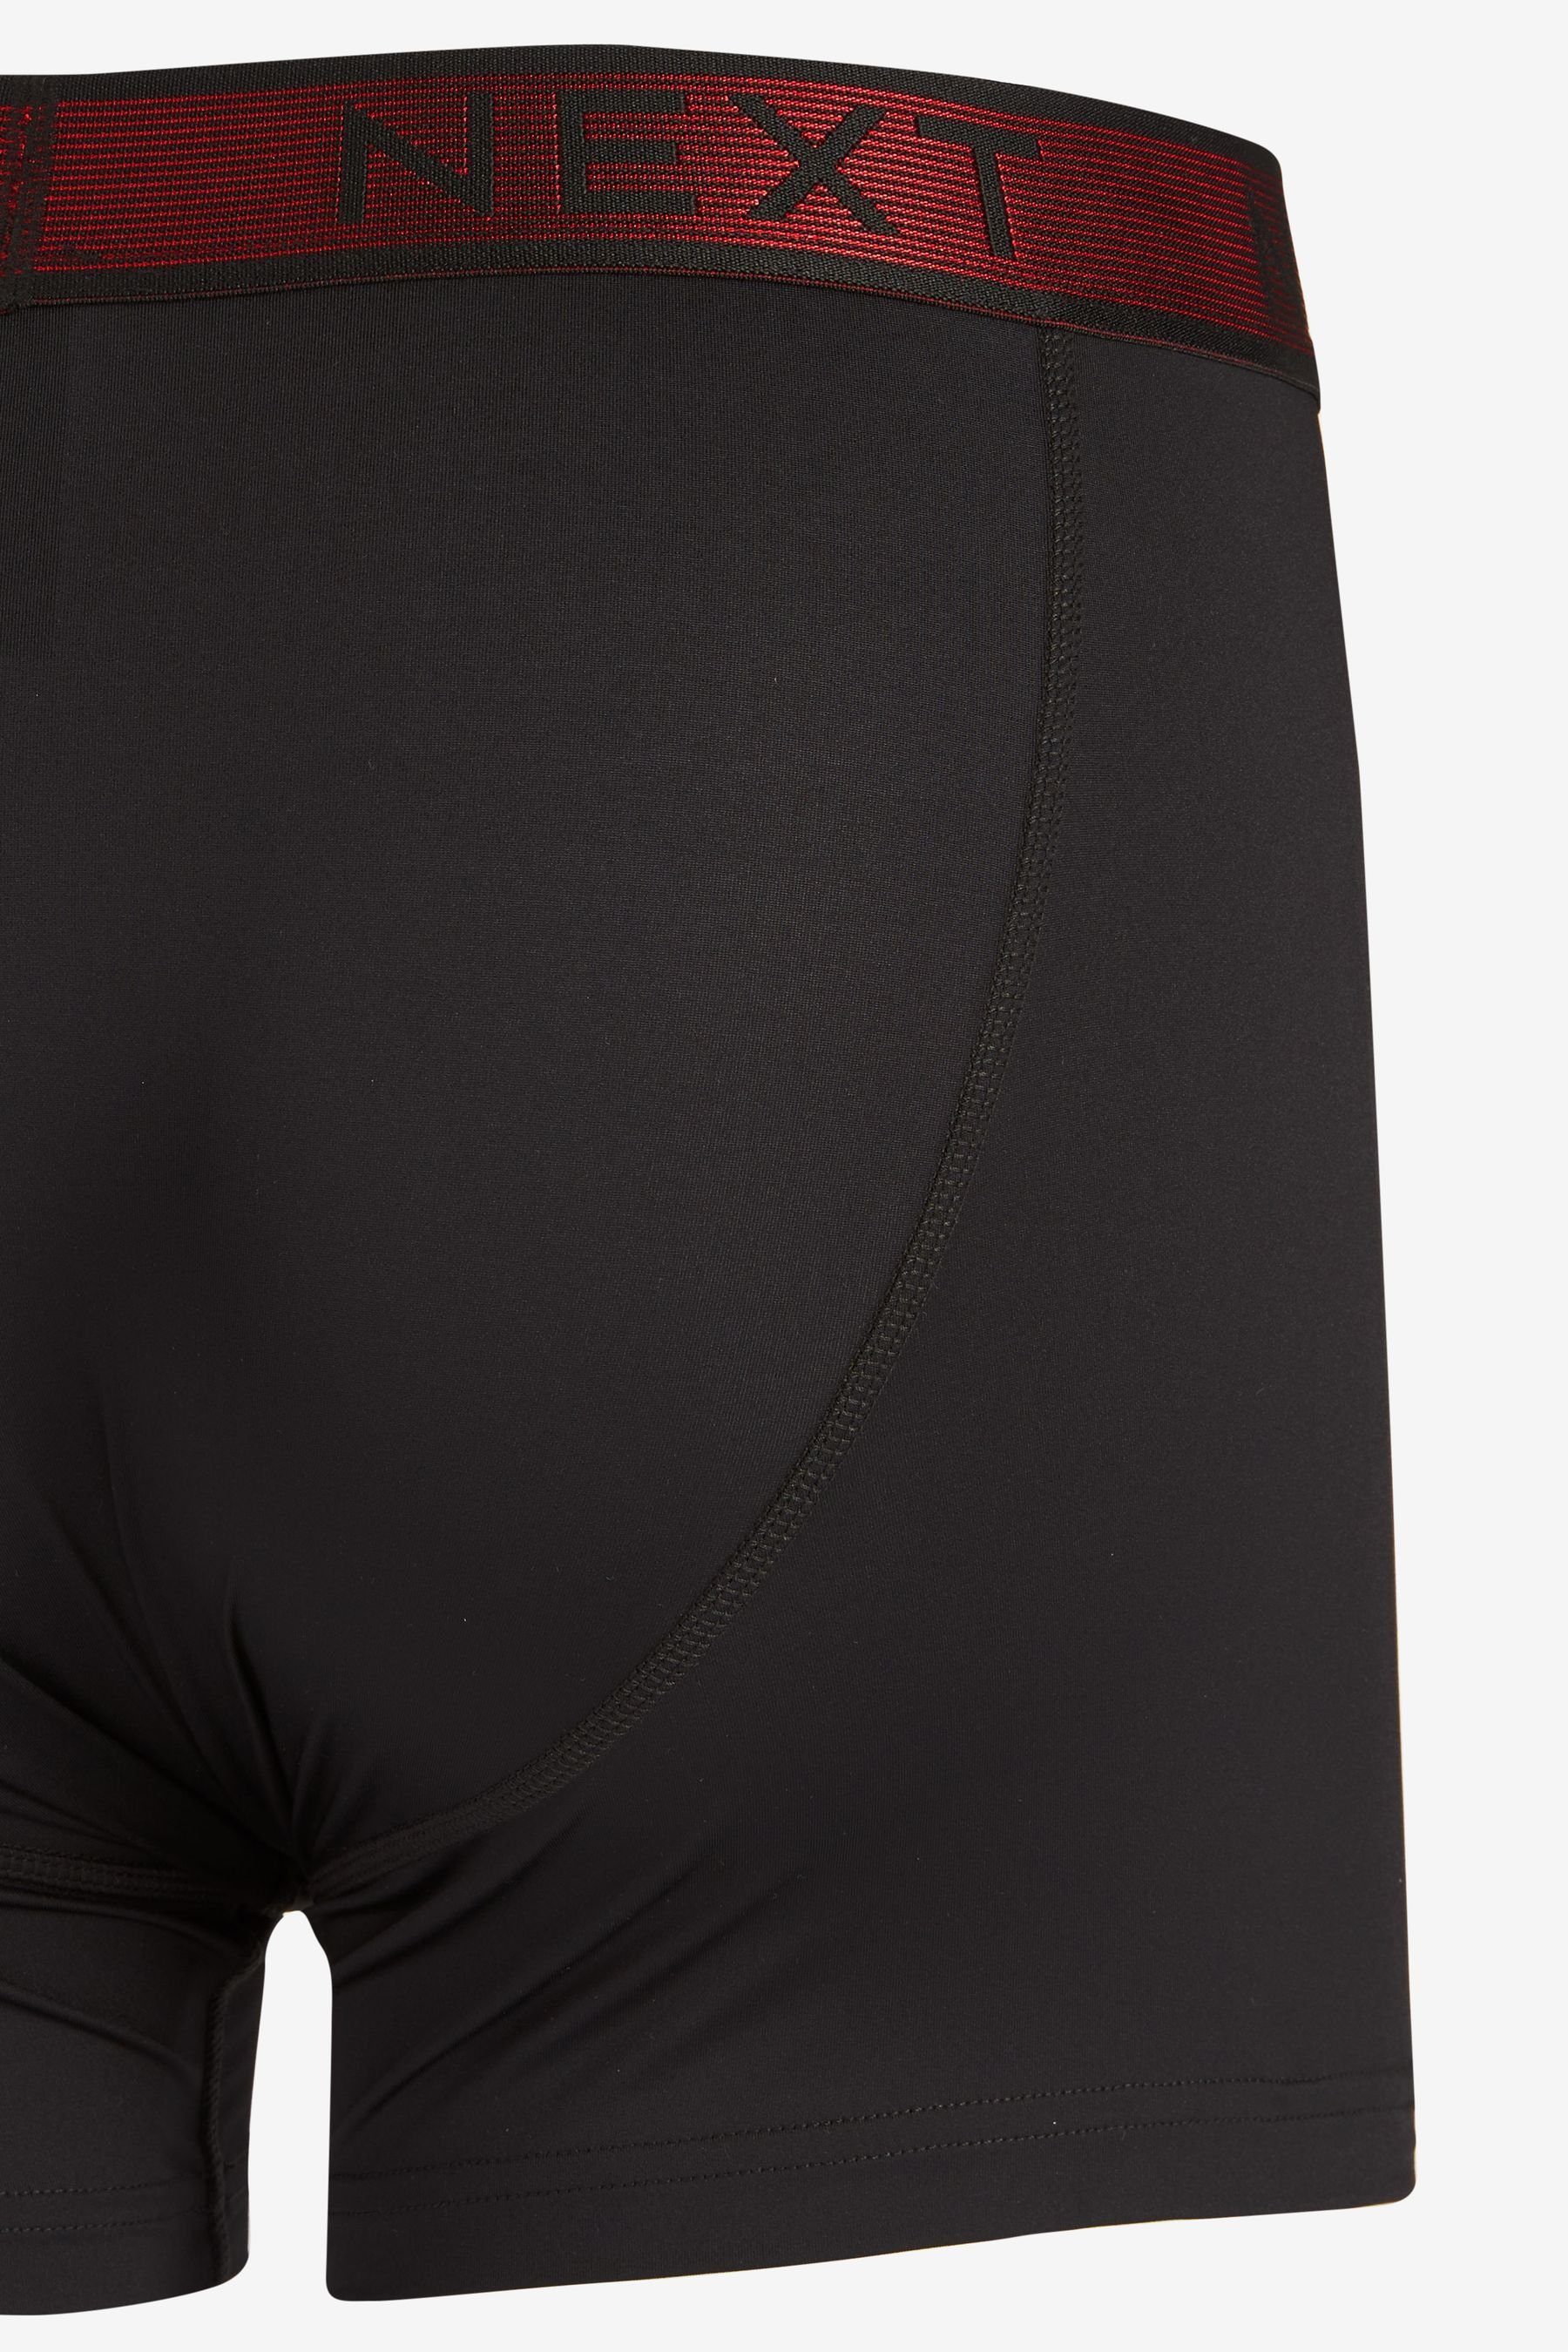 Flex Waistband A-Front 4er-Pack Next Motion leichte Metallic Black (4-St) Boxershorts Unterhosen Stripe